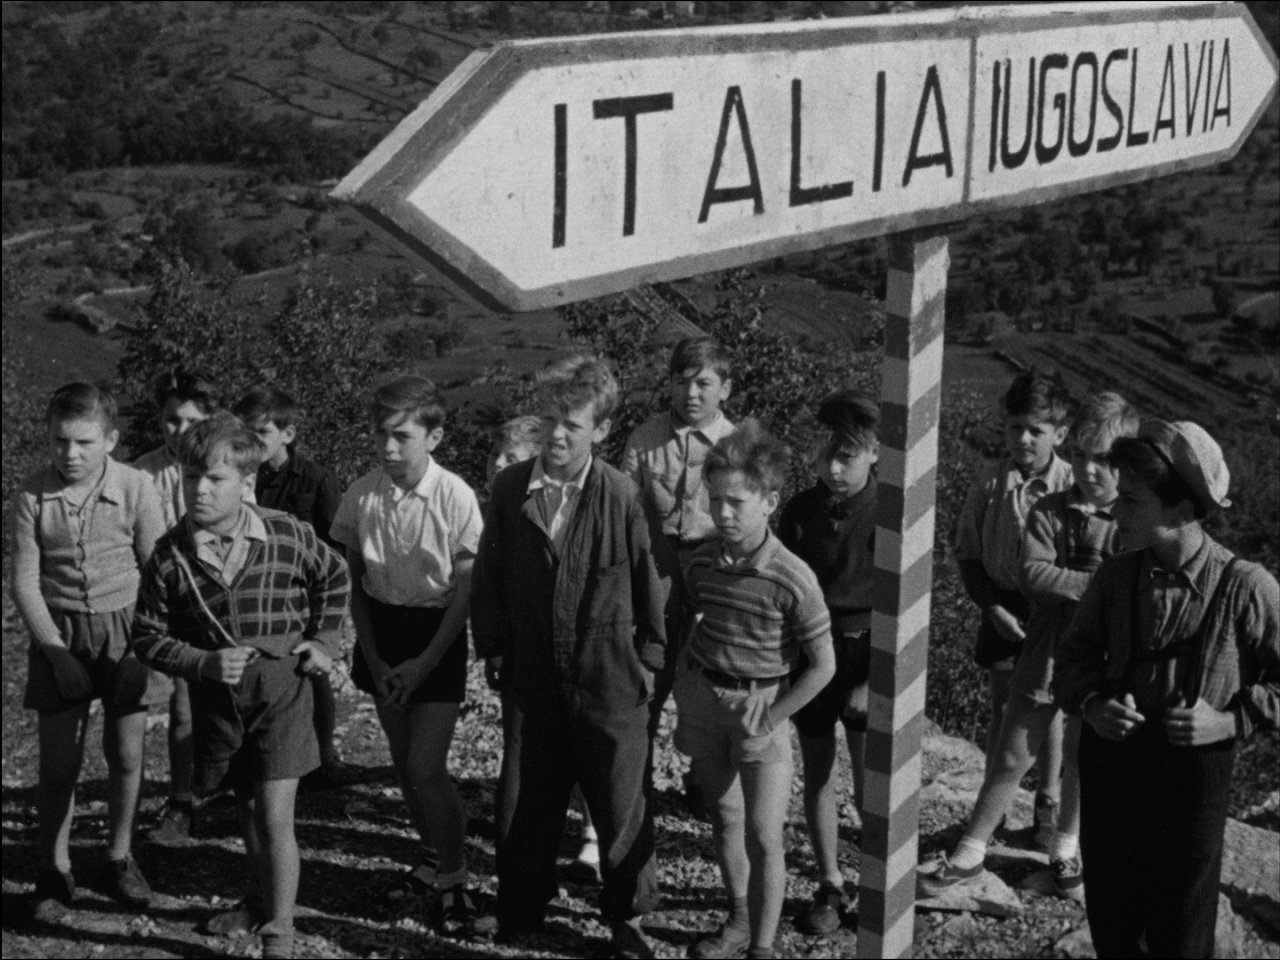 [P]Po drugi svetovni vojni v vasi na meji med Italijo in Jugoslavijo posebna komisija za razmejitev riše črto, ki bo vas razdelila na pol. V nekaj urah se bodo morali vaščani odločiti, ali bodo Italijani ali Jugoslovani. To pri ljudeh povzroča številne stiske. Eden od kmetov ima hišo na eni strani meje in njivo na drugi. Mladenič ima svojo ljubezen v drugi polovici naselja. Otroci so z vseh koncev vasi in niti oni se ne sprijaznijo s takšnimi spremembami.[/P]